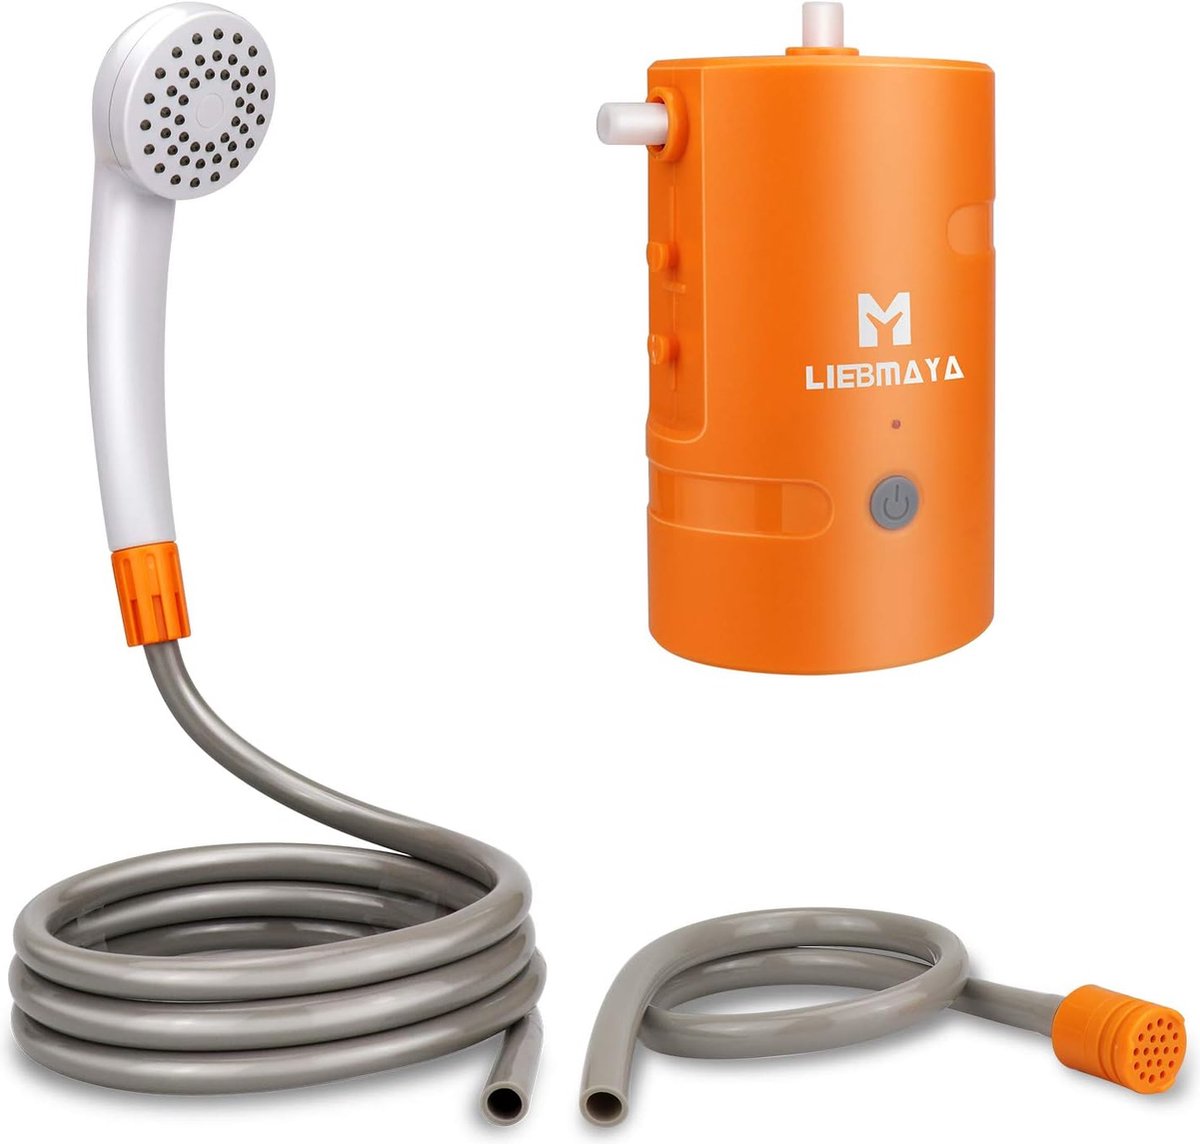 Buitendouche 4400 mAh oplaadbare USB-pomp handheld buitendouche voor kamperen wandelen reizen IPX7 waterdicht